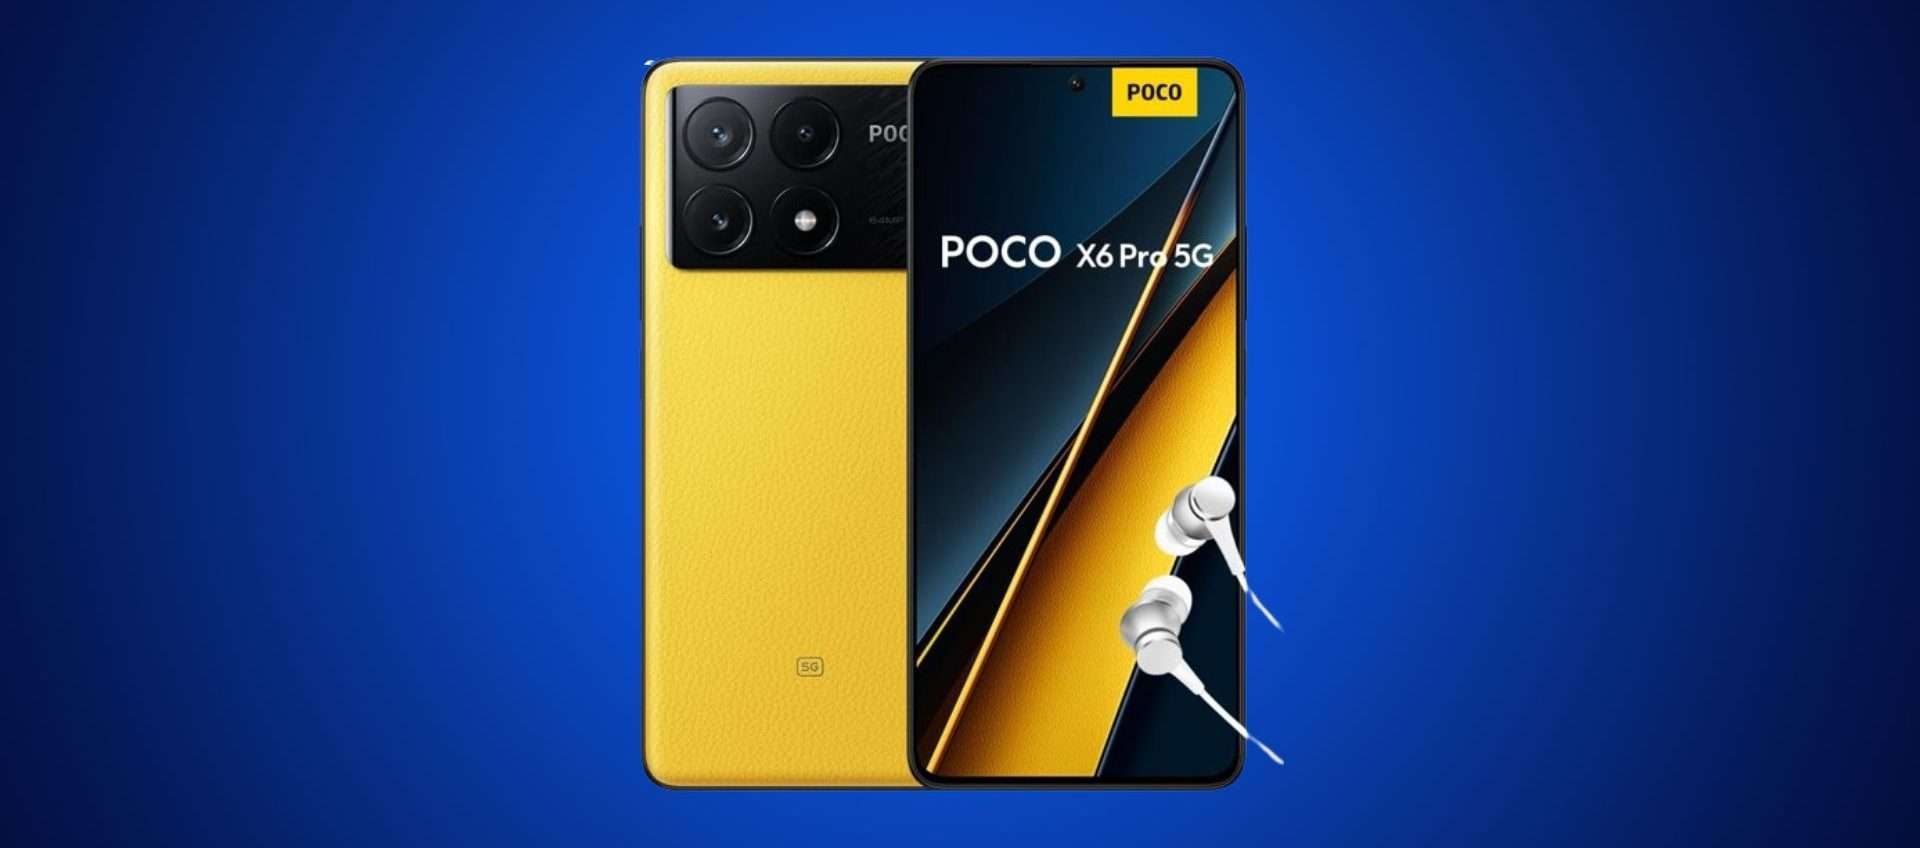 POCO X6 Pro in offerta su Amazon: prestazioni formidabili, ottimo prezzo